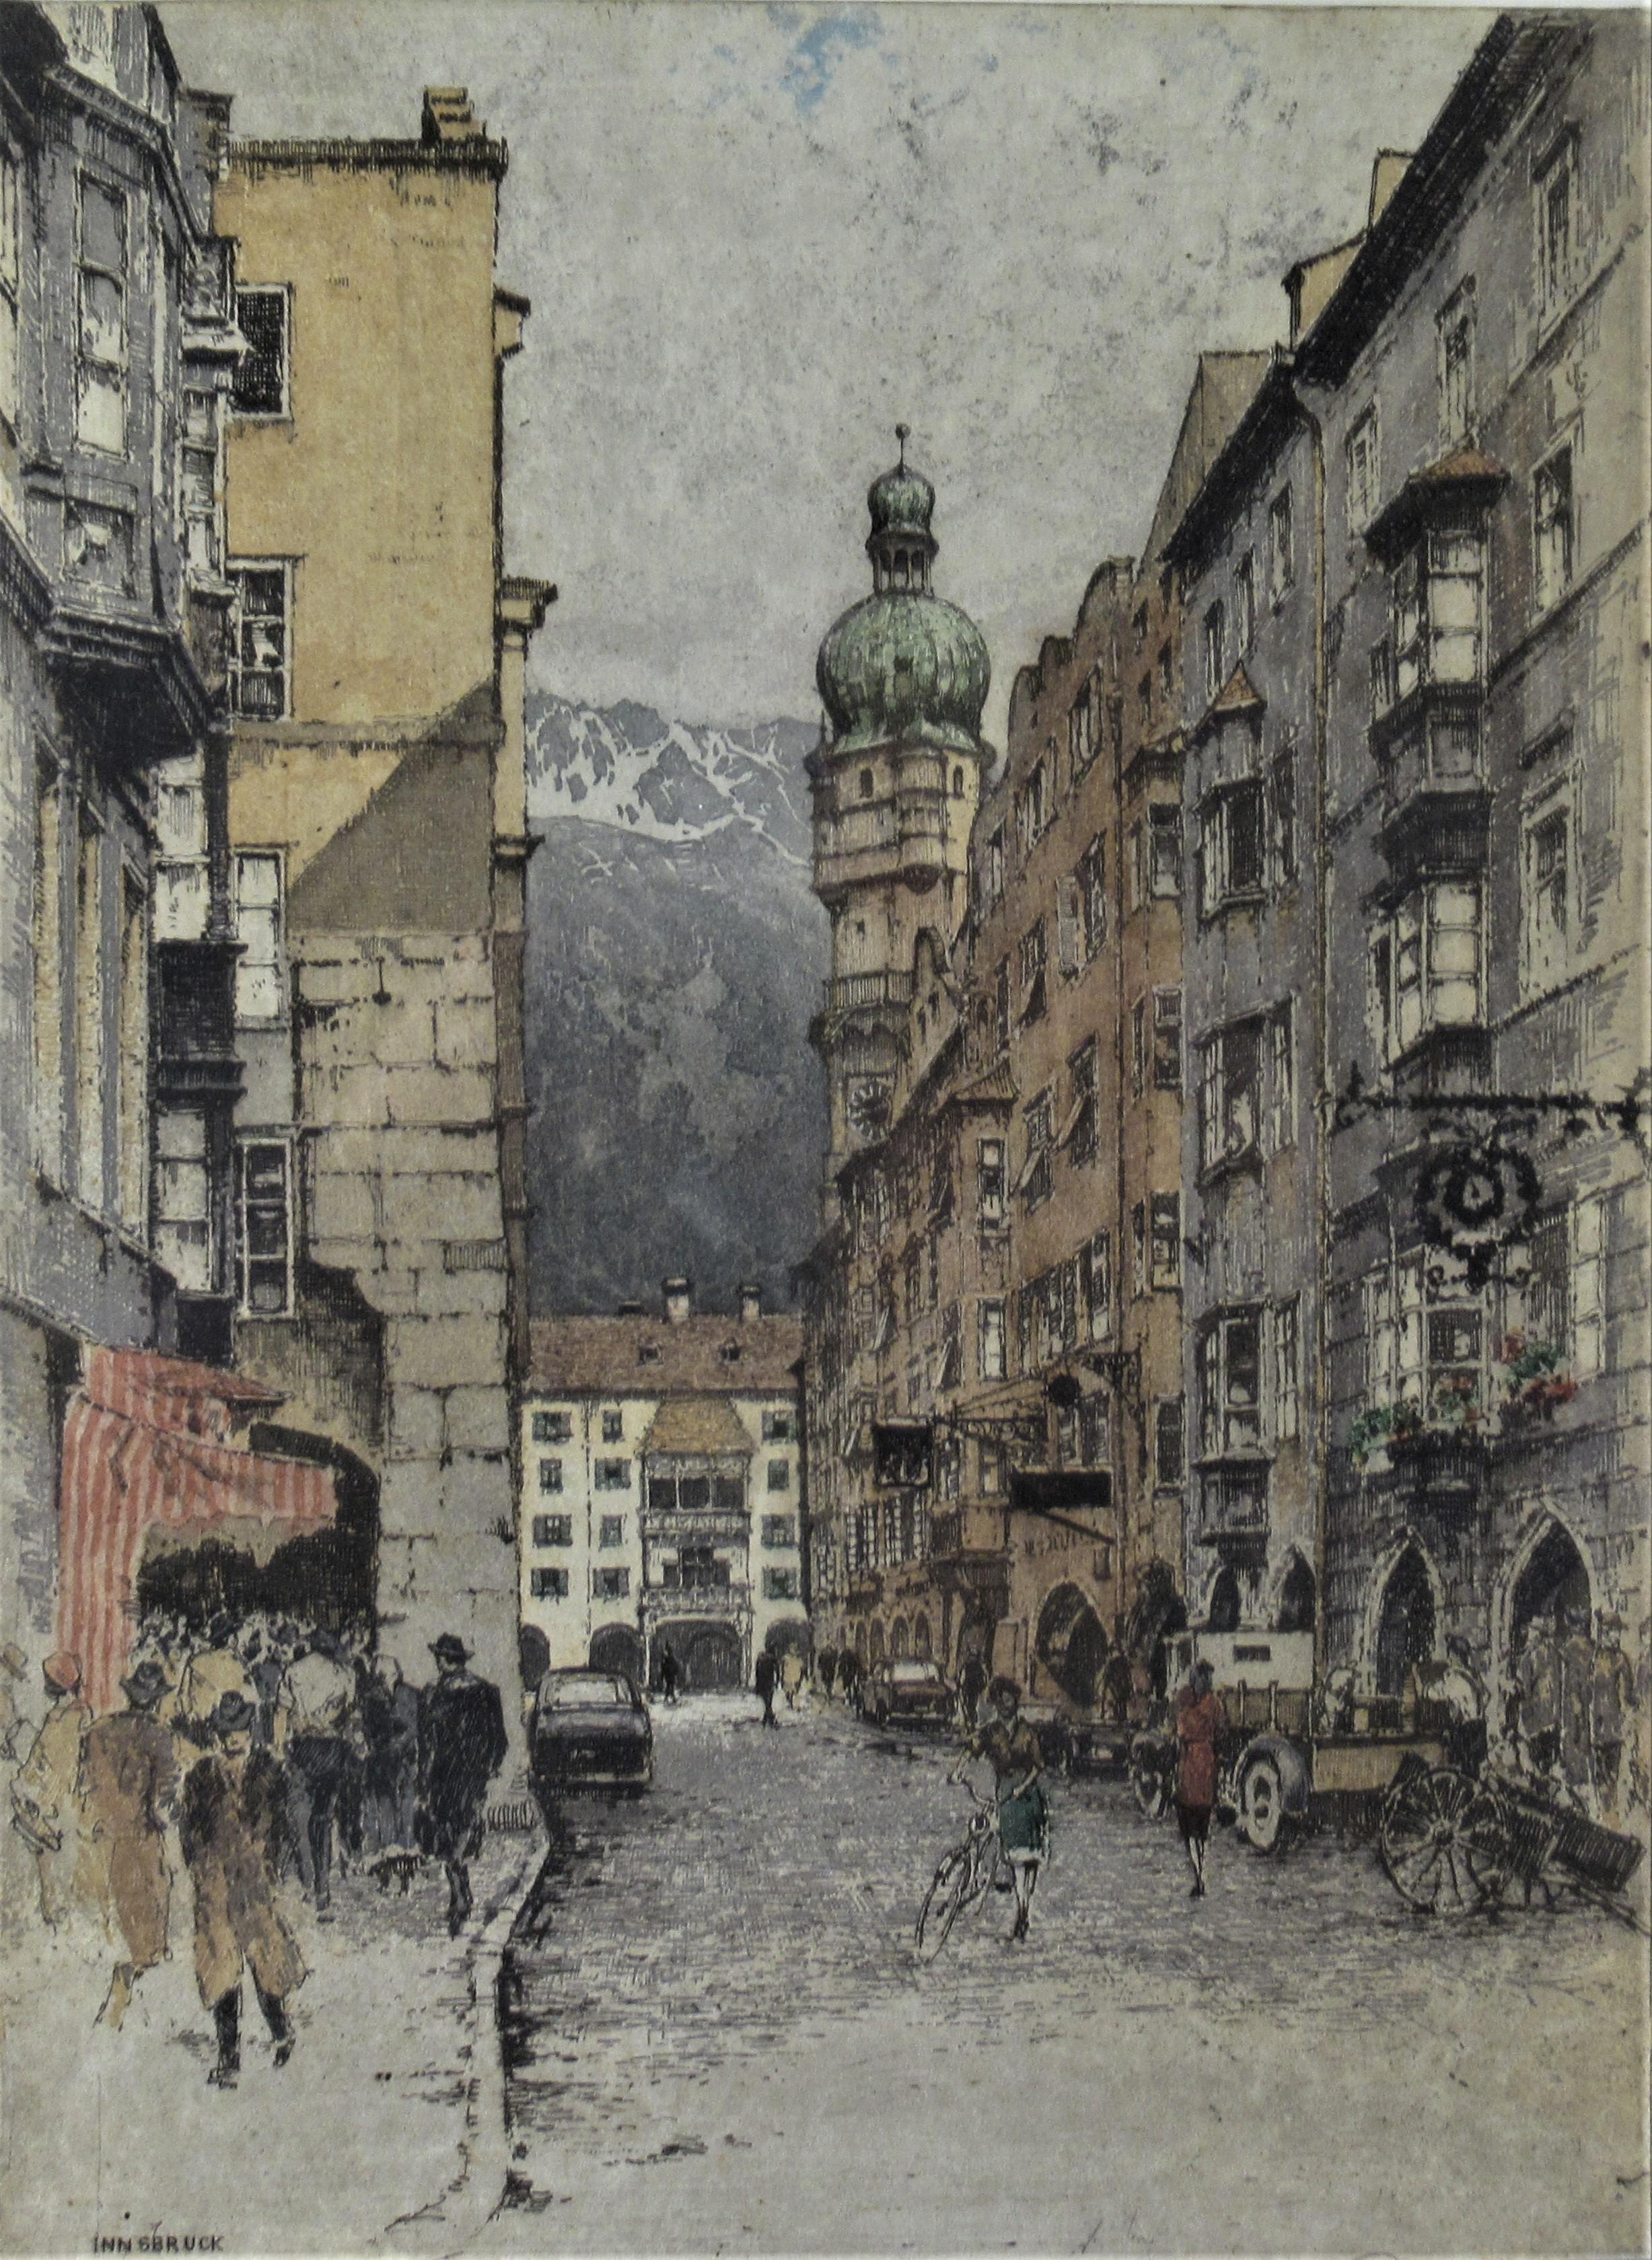 Innsbruck - Print by Josef Eidenberger